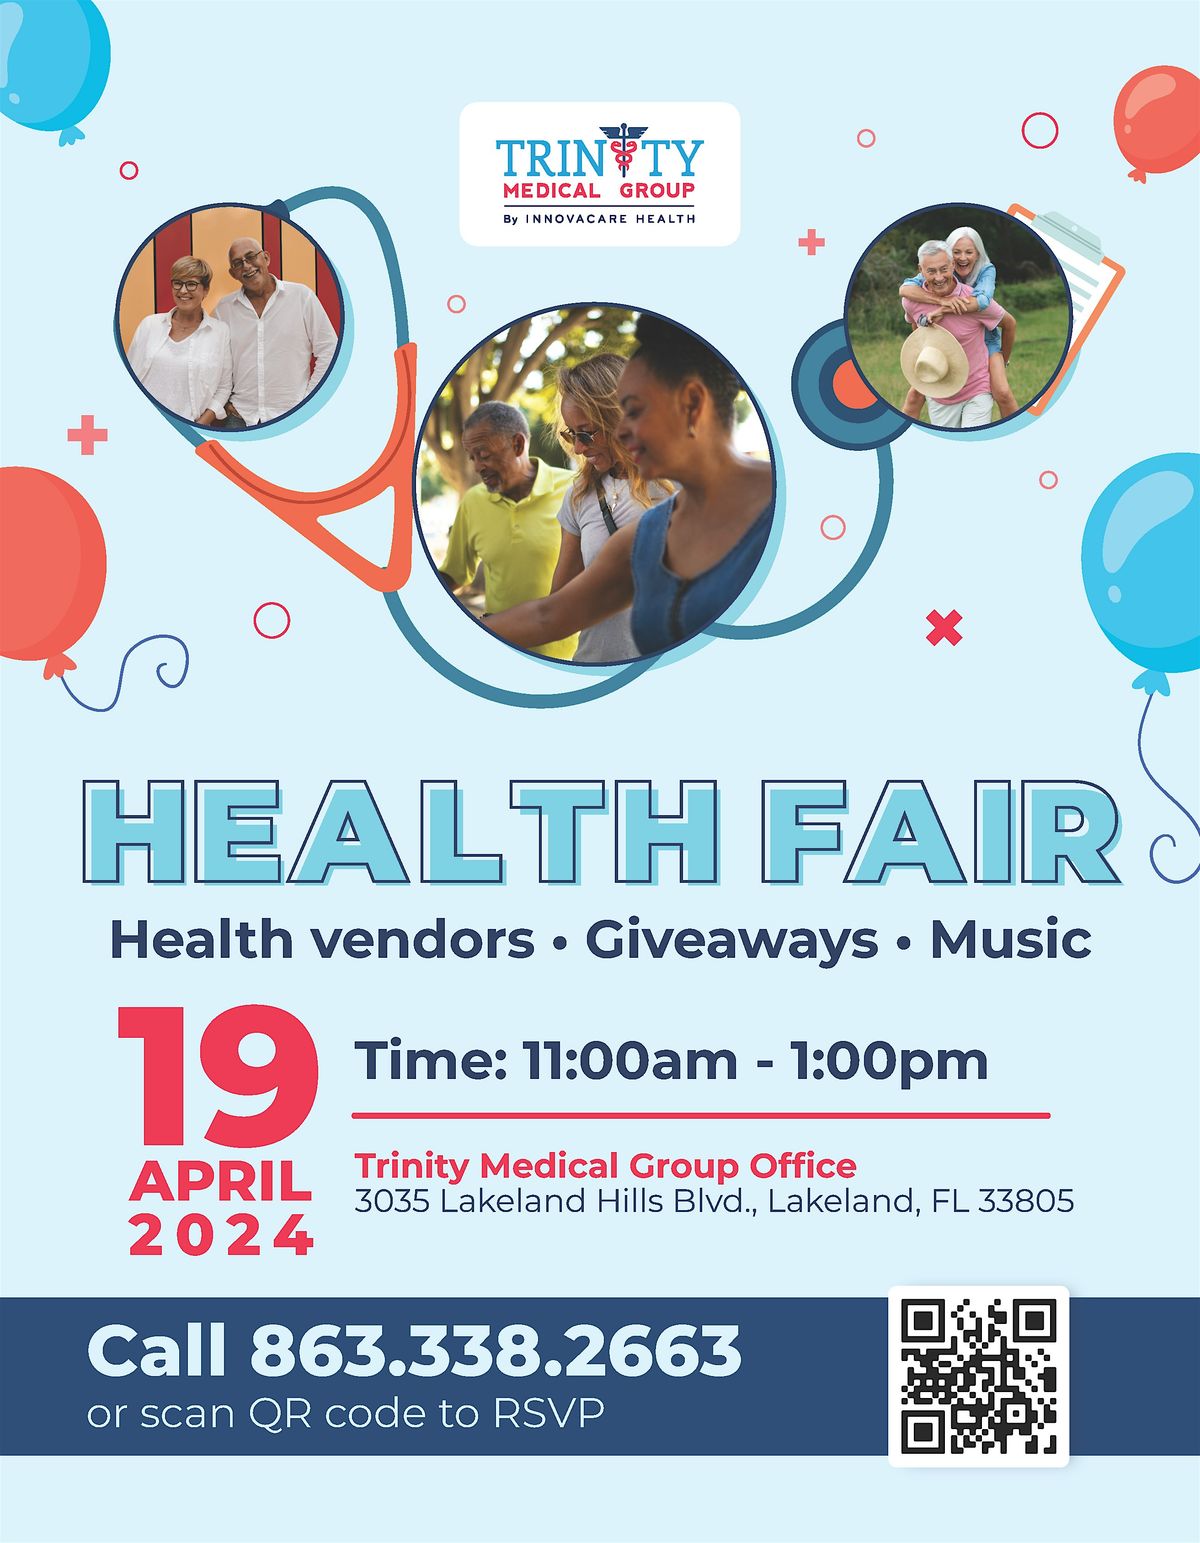 Mini Health Fair with Trinity Medical Group